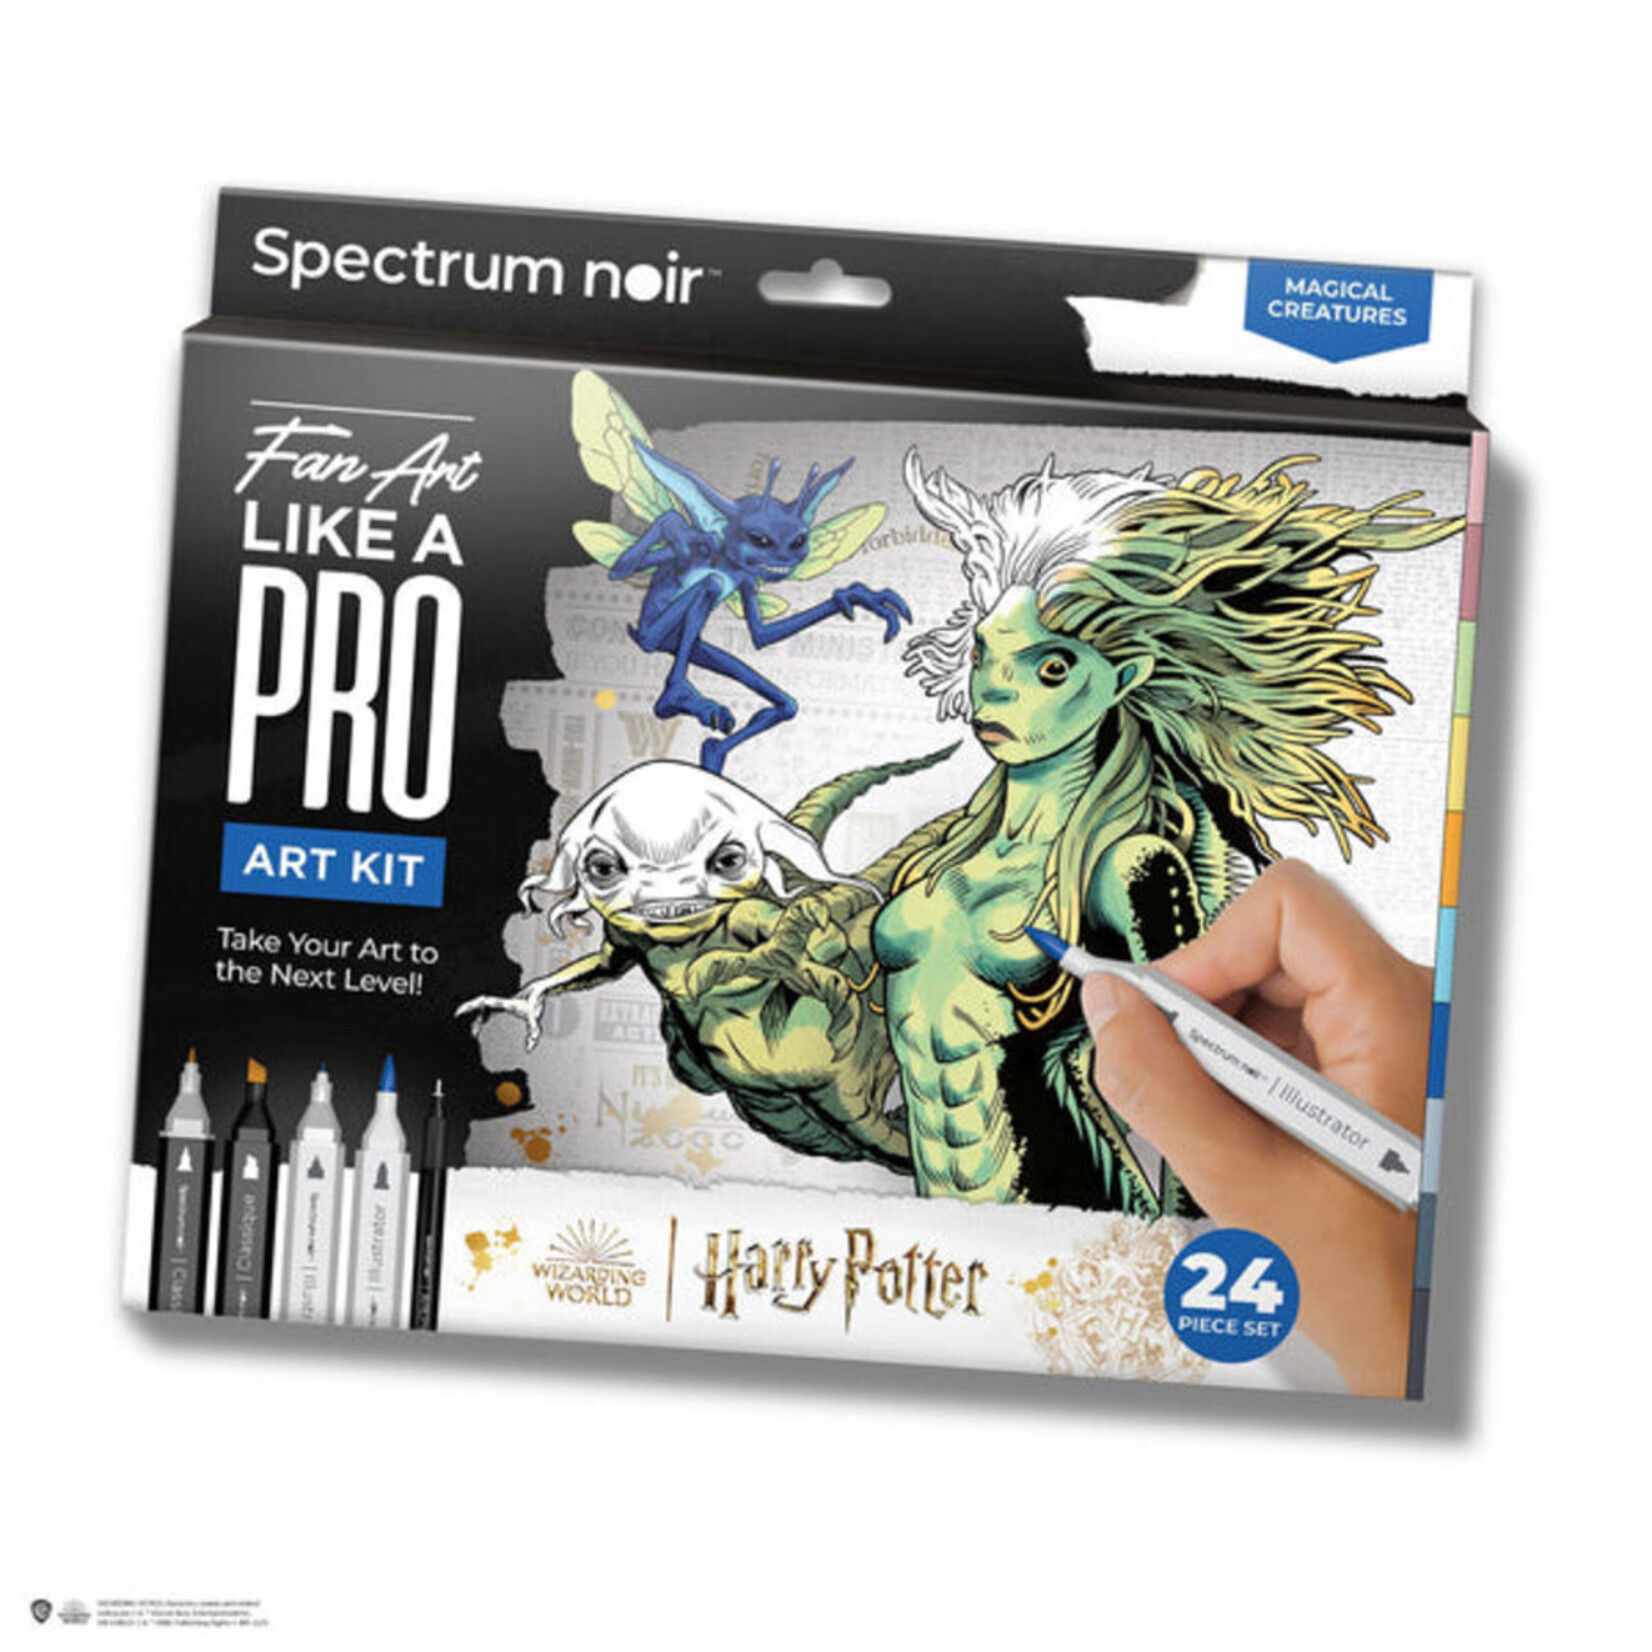 Spectrum Noir Spectrum Noir Harry Potter Fan Art Like a Pro Kit Magical Creatures 24 pcs